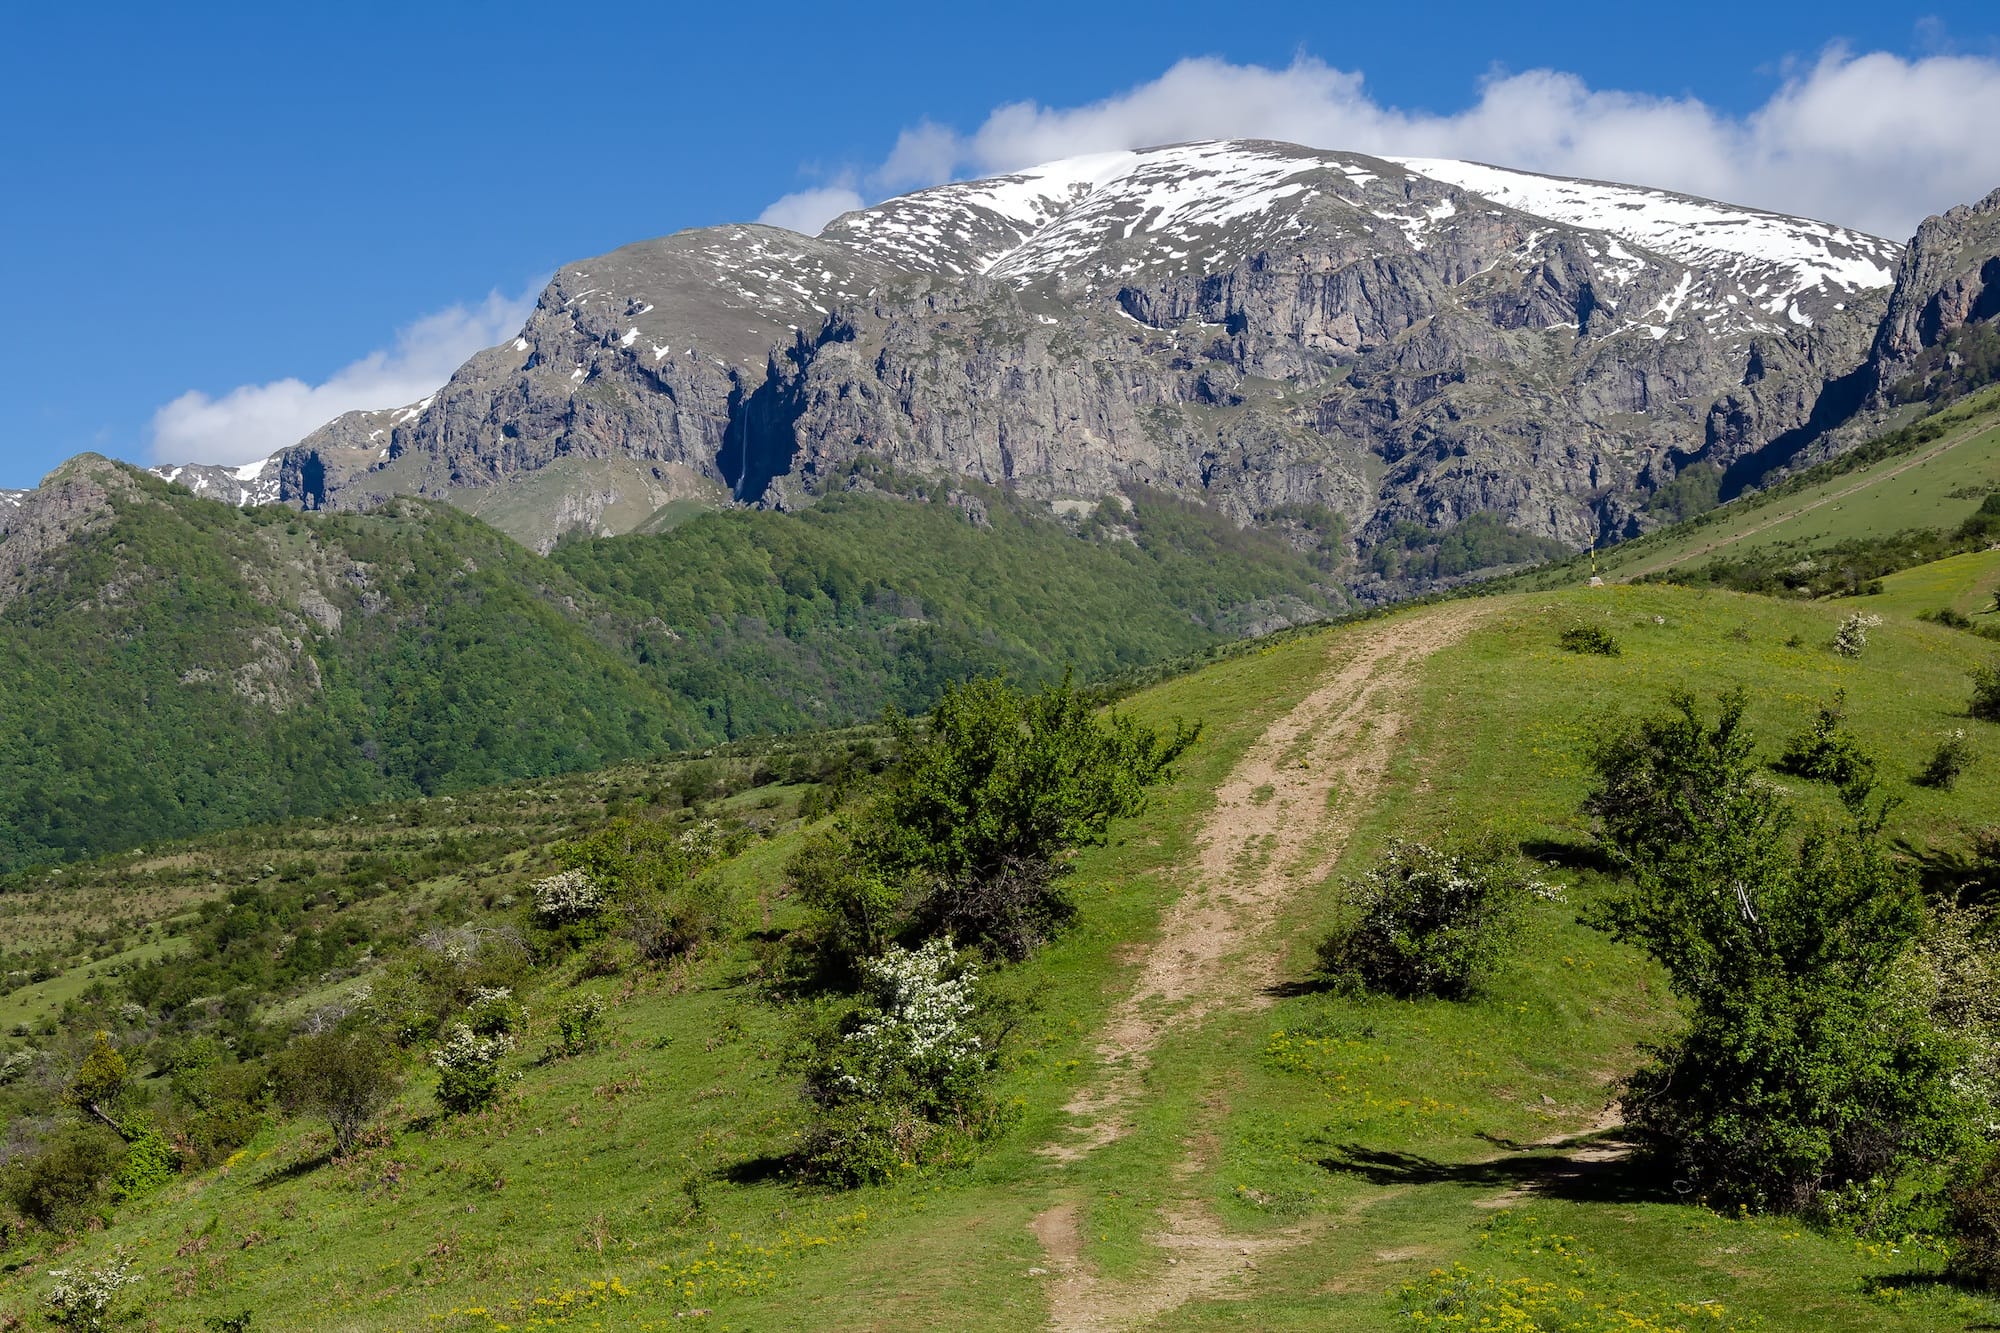 Mount Stara Planina, the Botev peak in Bulgaria